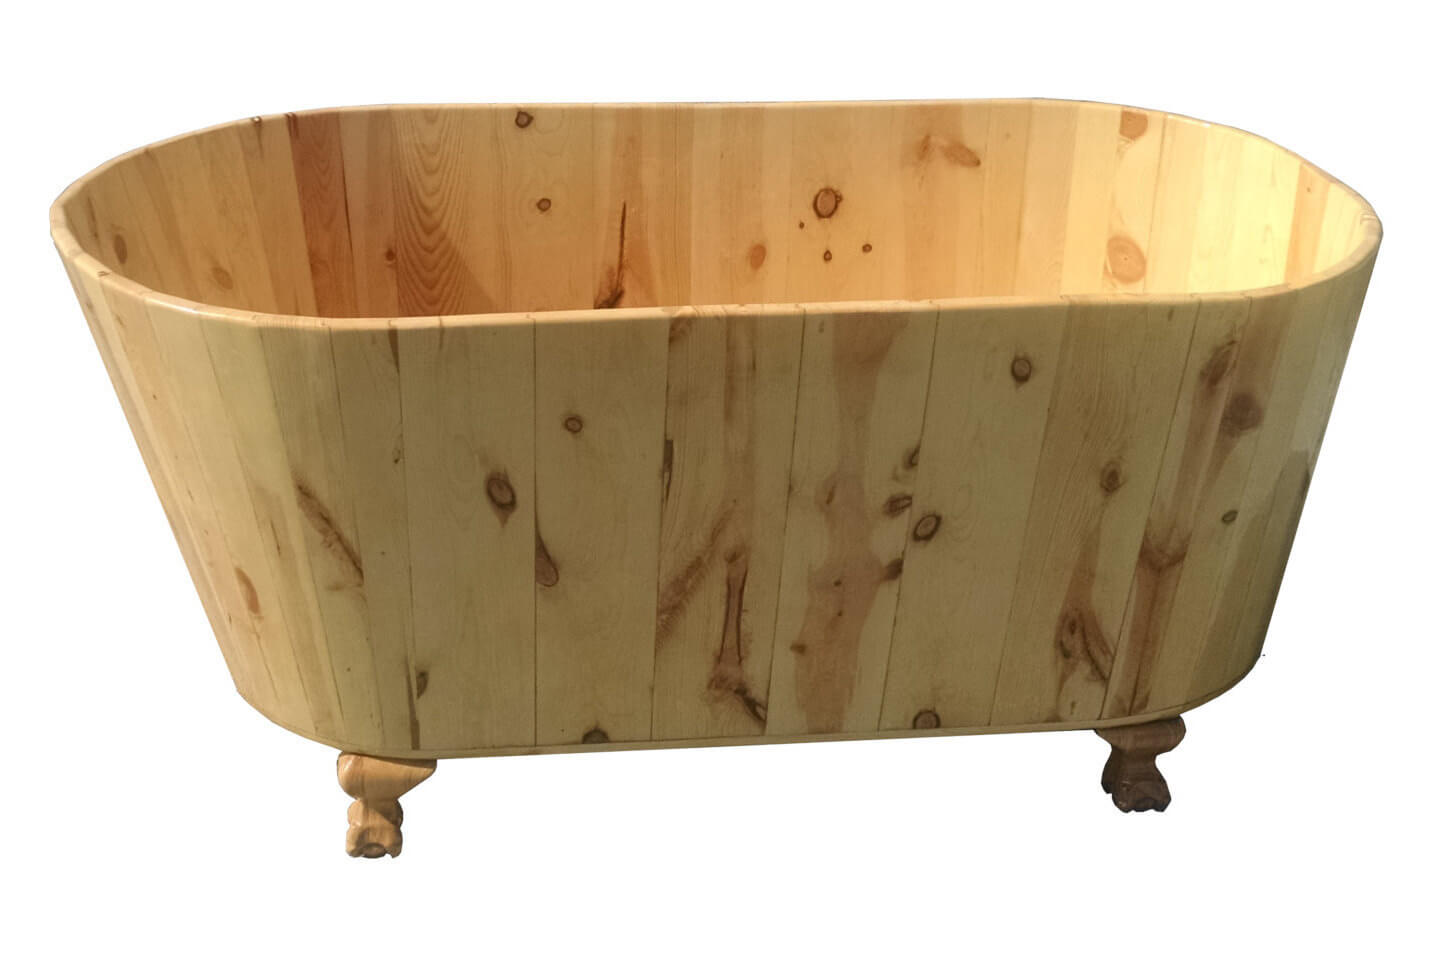 松木浴缸etsy卖方浮木浴缸。